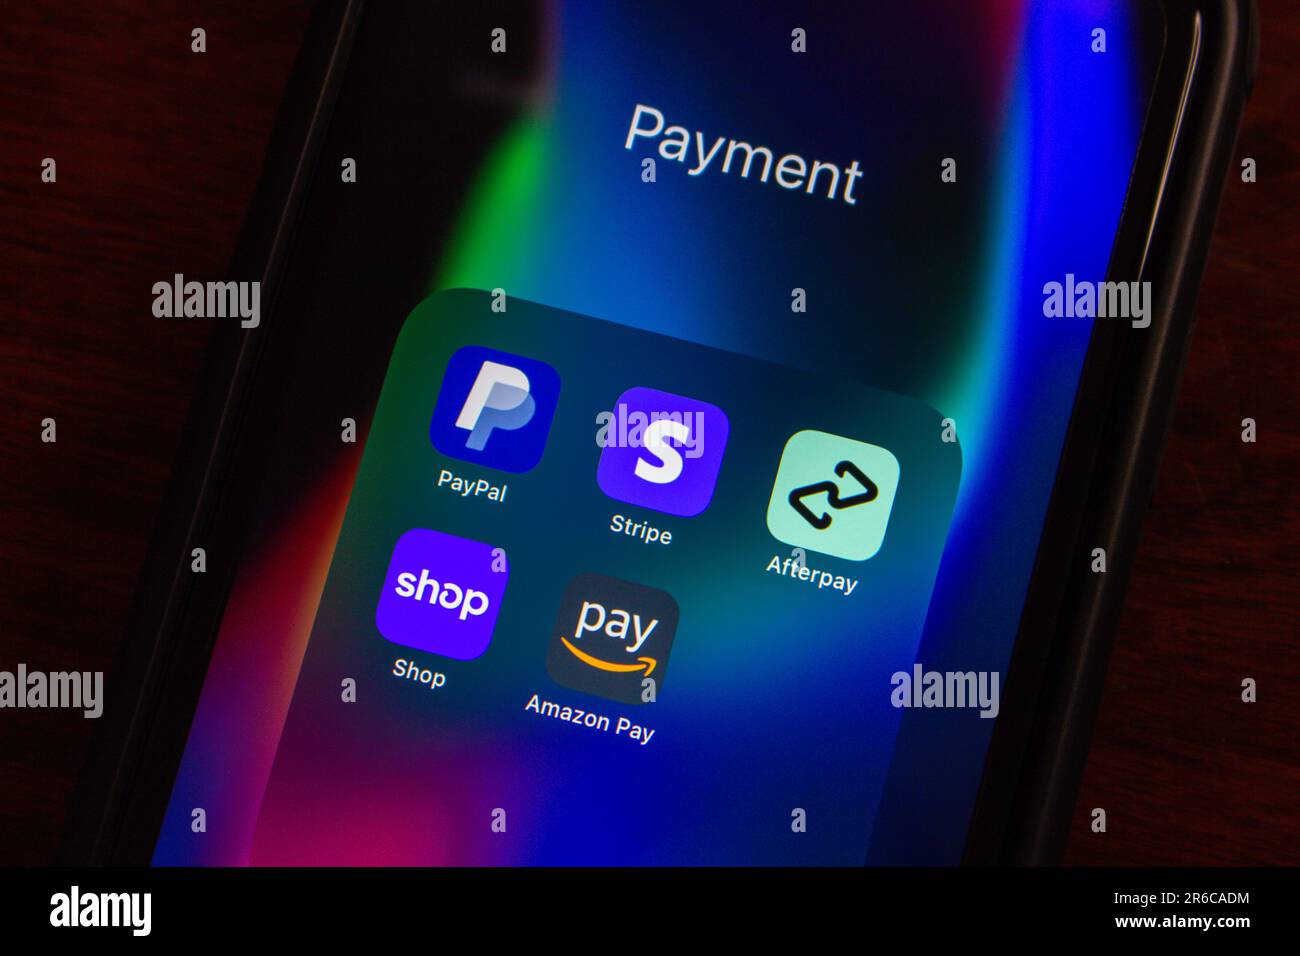 PayPal, Stripe Dashboard, Afterpay, Shop app par Shopify, Amazon Pay vu dans un iPhone. Concept populaire de plateformes de paiement et de caisse. Banque D'Images